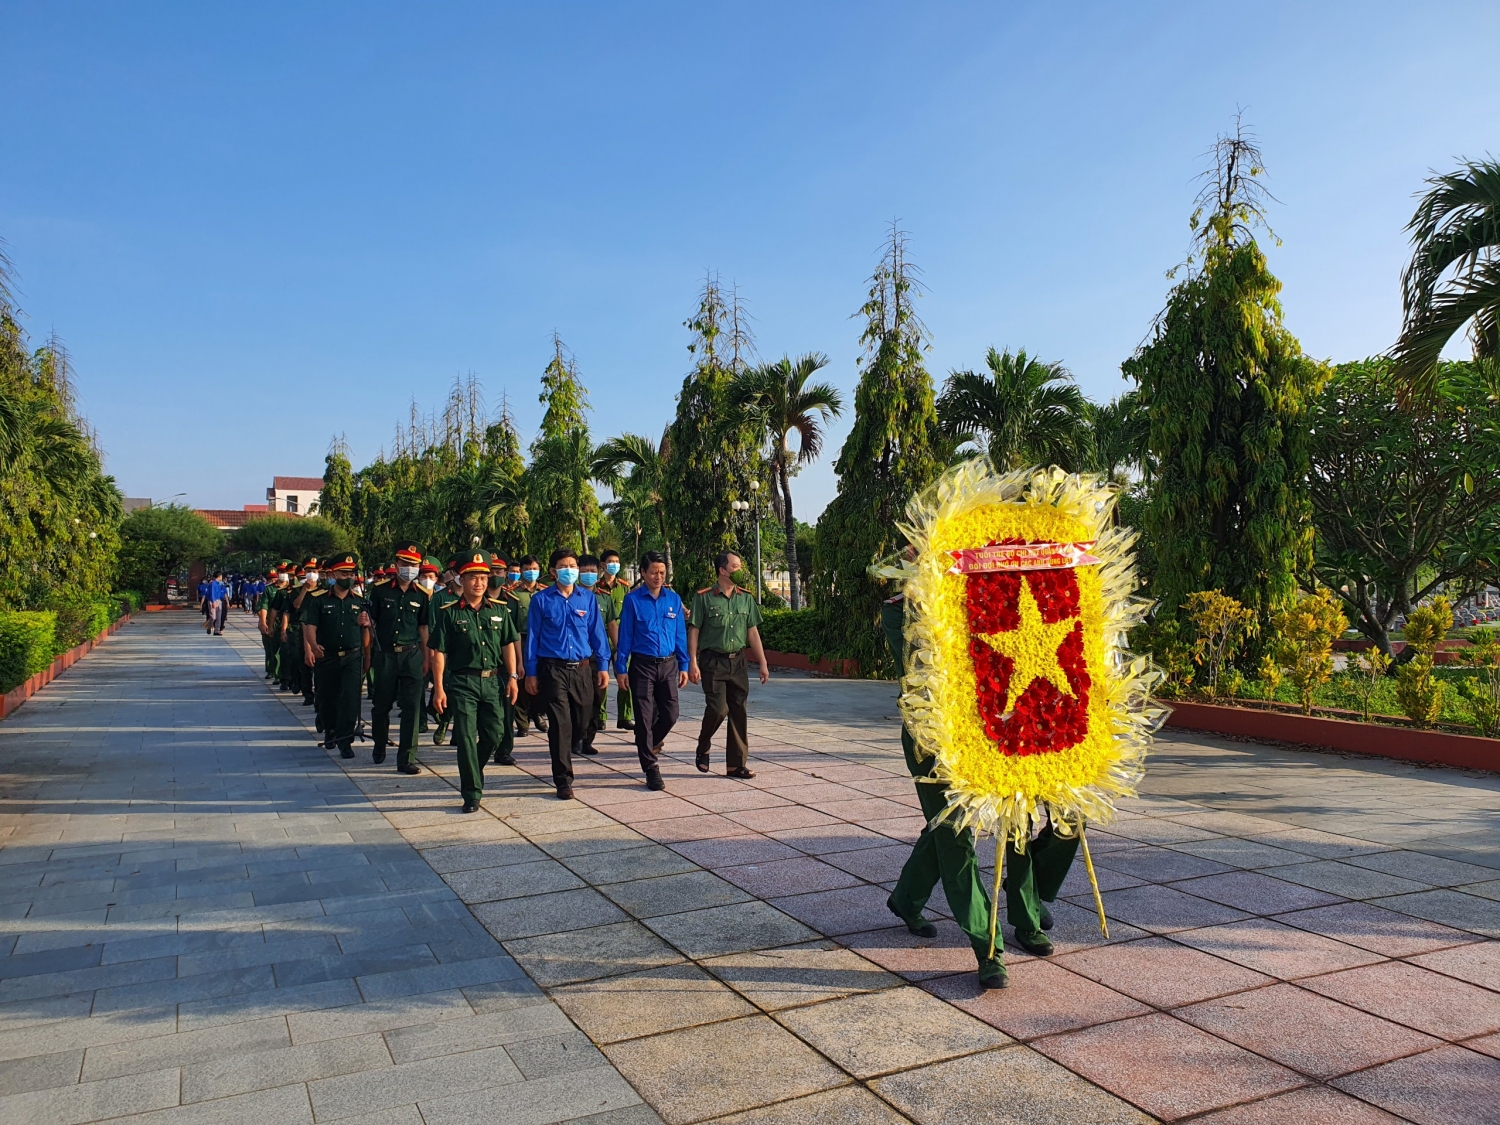 hường trực Tỉnh Đoàn và đoàn viên, thanh niên tham gia đặt vòng hoa tưởng niệm các anh hùng liệt sĩ tại Đài tưởng niệm Nghĩa trang Liệt sĩ tỉnh.